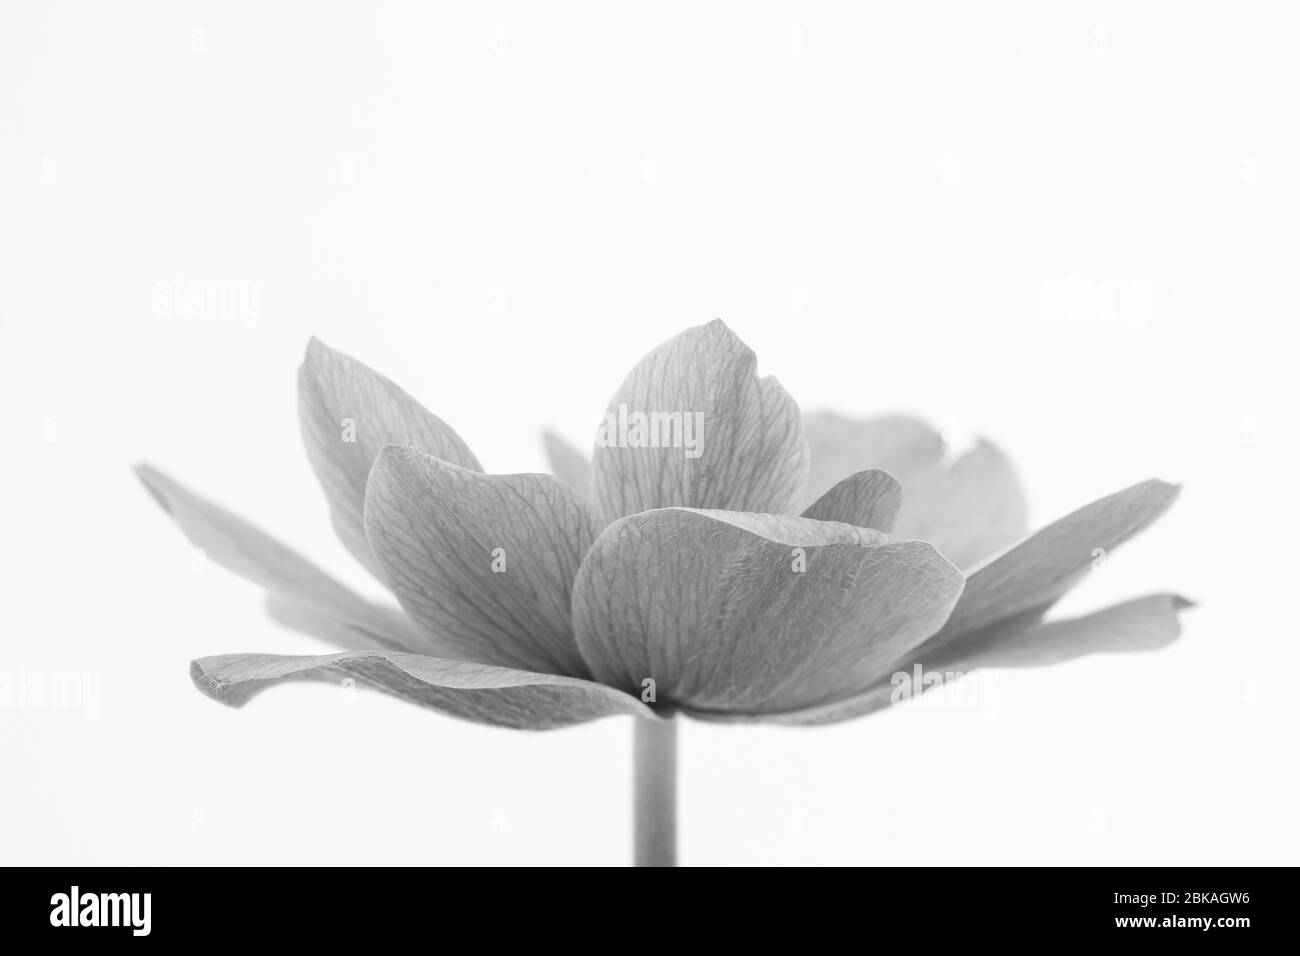 Image en noir et blanc des pétales délicats d'une fleur d'Anemone sur fond blanc Banque D'Images